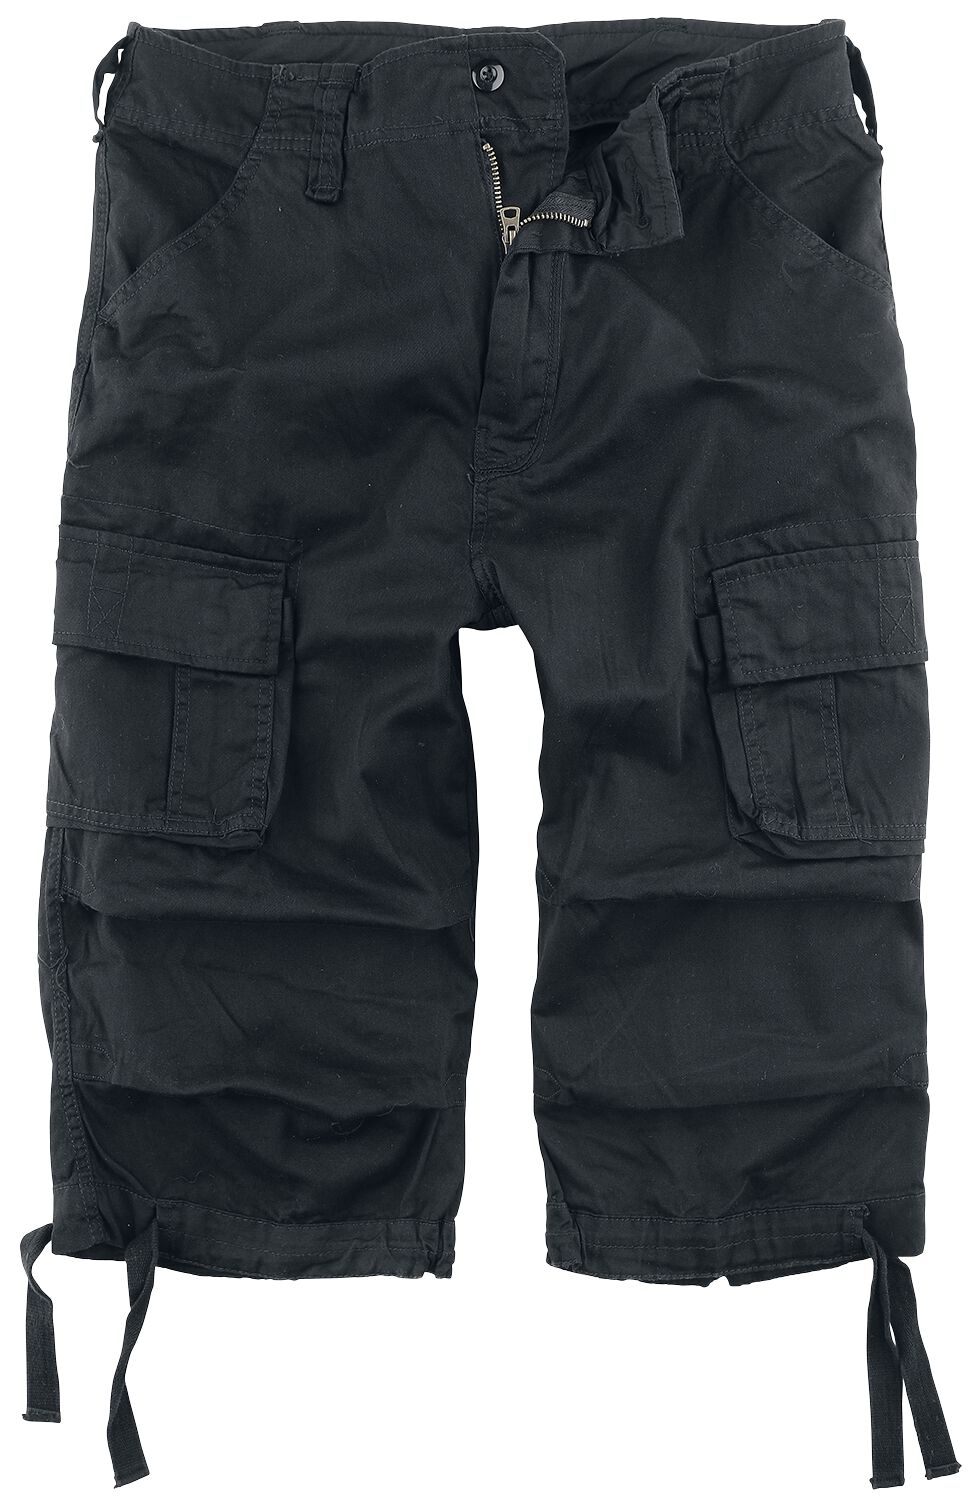 Brandit Urban Legend 3/4 Shorts Short schwarz in S